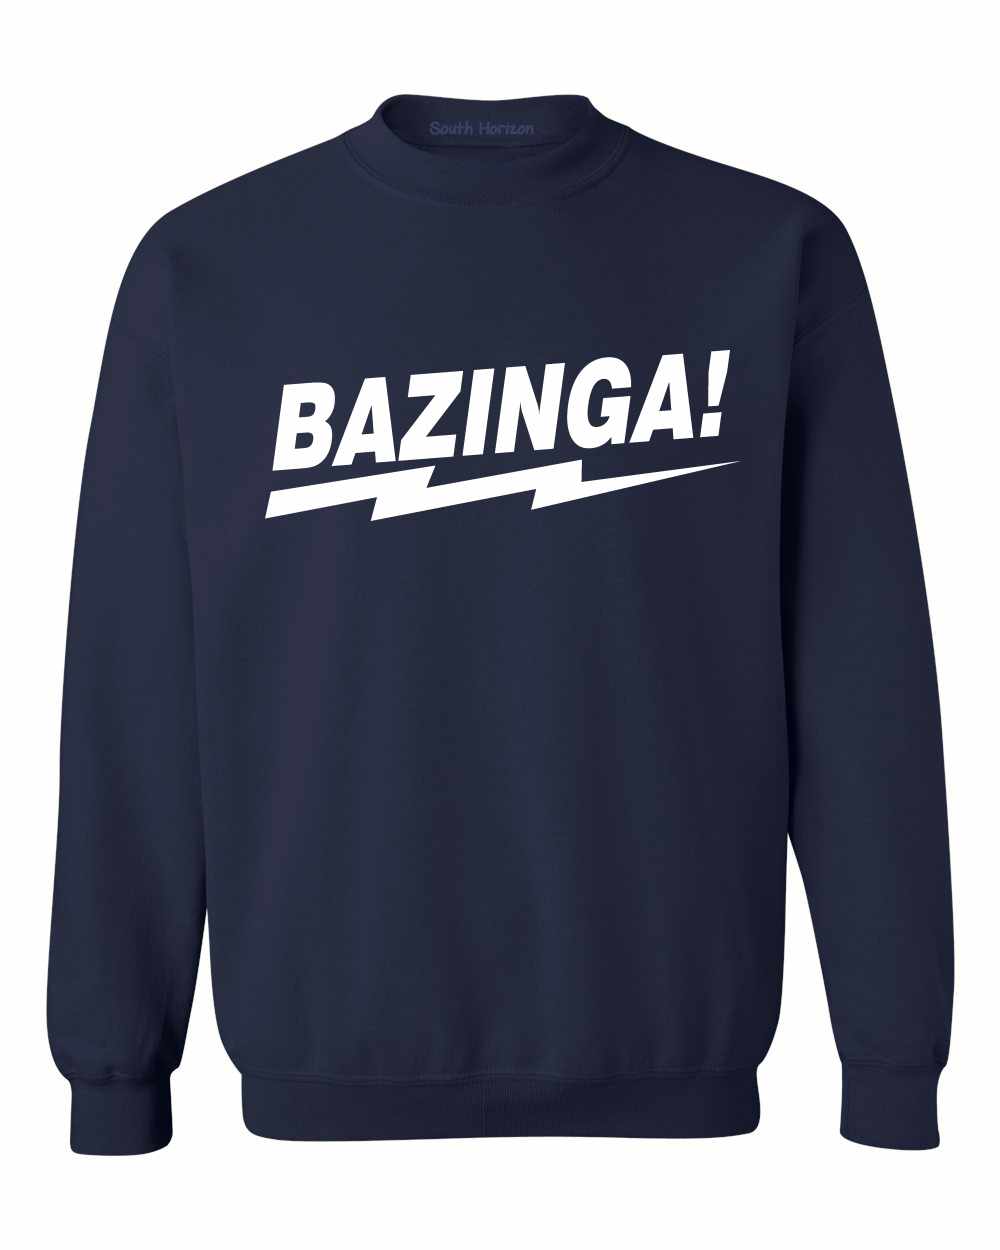 BAZINGA! on SweatShirt (#829-11)